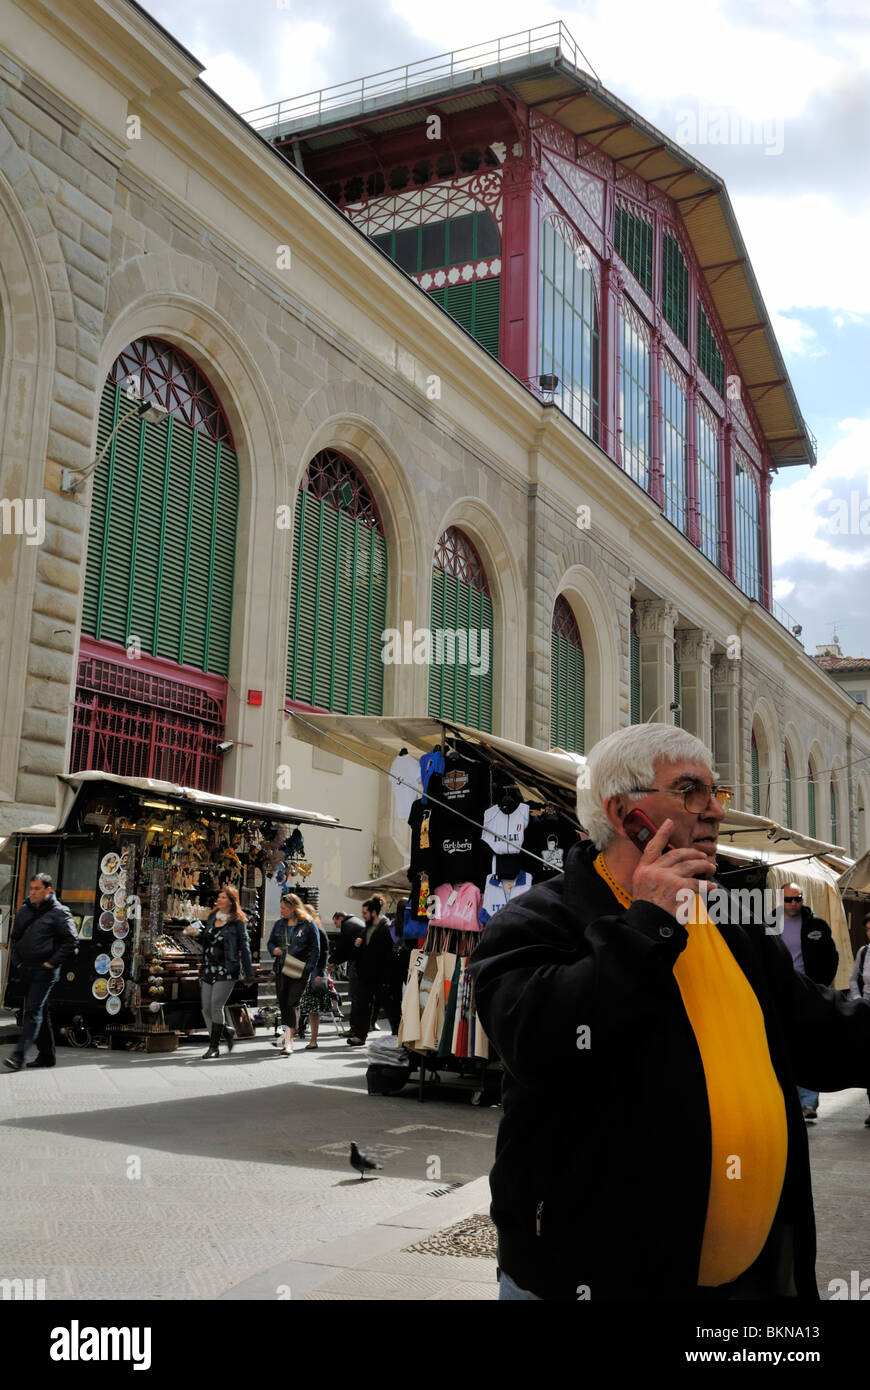 San Lorenzo street market e il Mercato Centrale sono una delle aree più trafficate in Firenze centro storico. Mercato Centrale Foto Stock